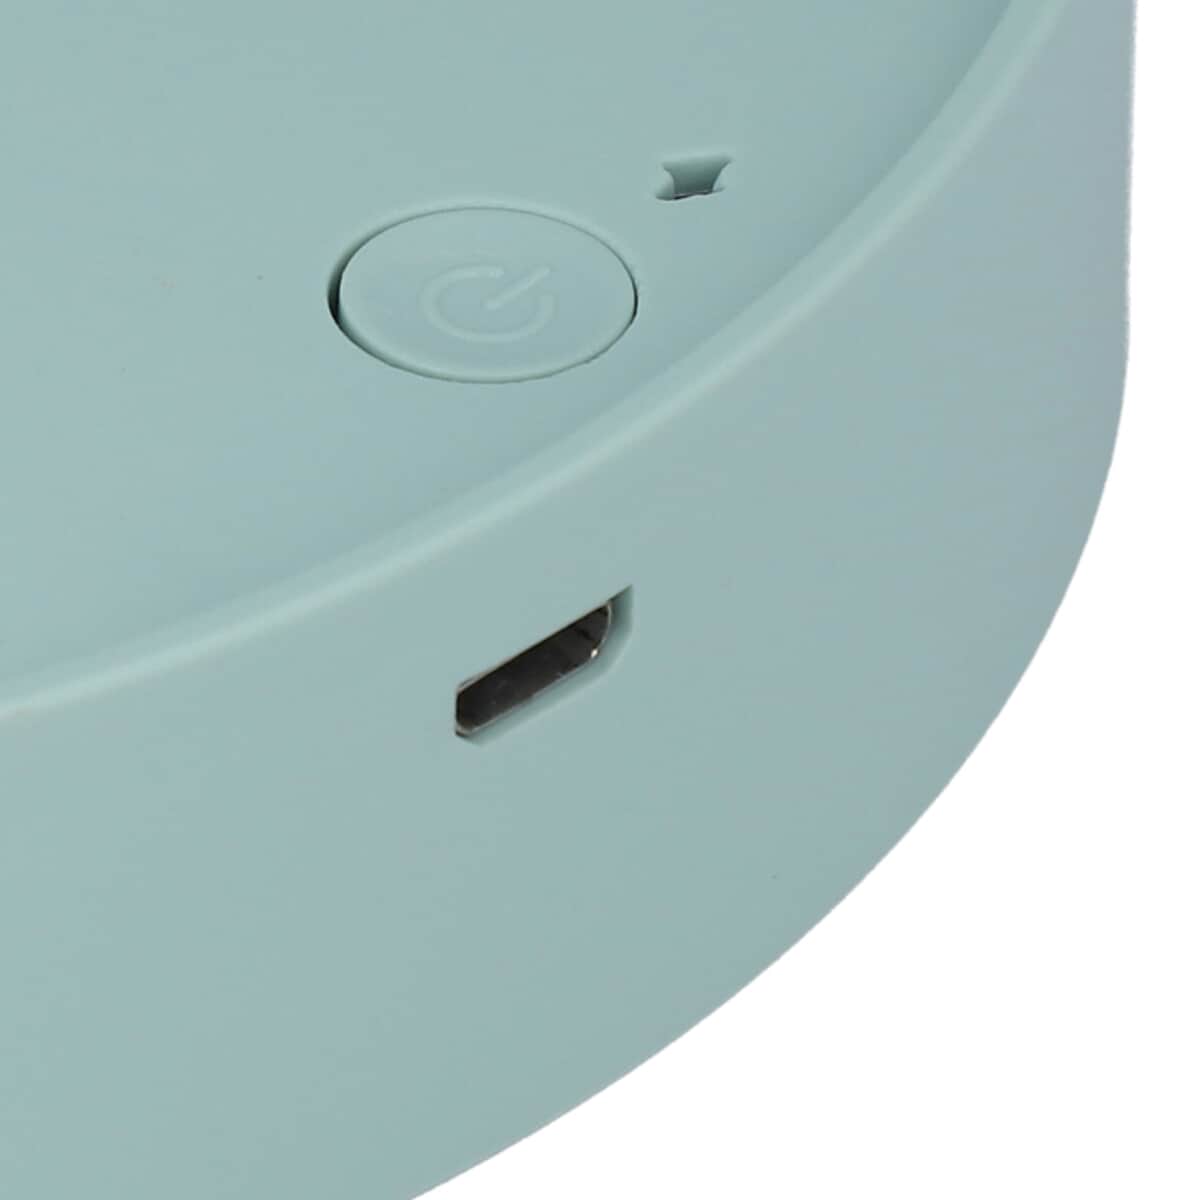 HOMESMART Foldable USB Desk Fan with Adjustable 3 Wind Speeds - Blue (1200 mAh, 2W) image number 6